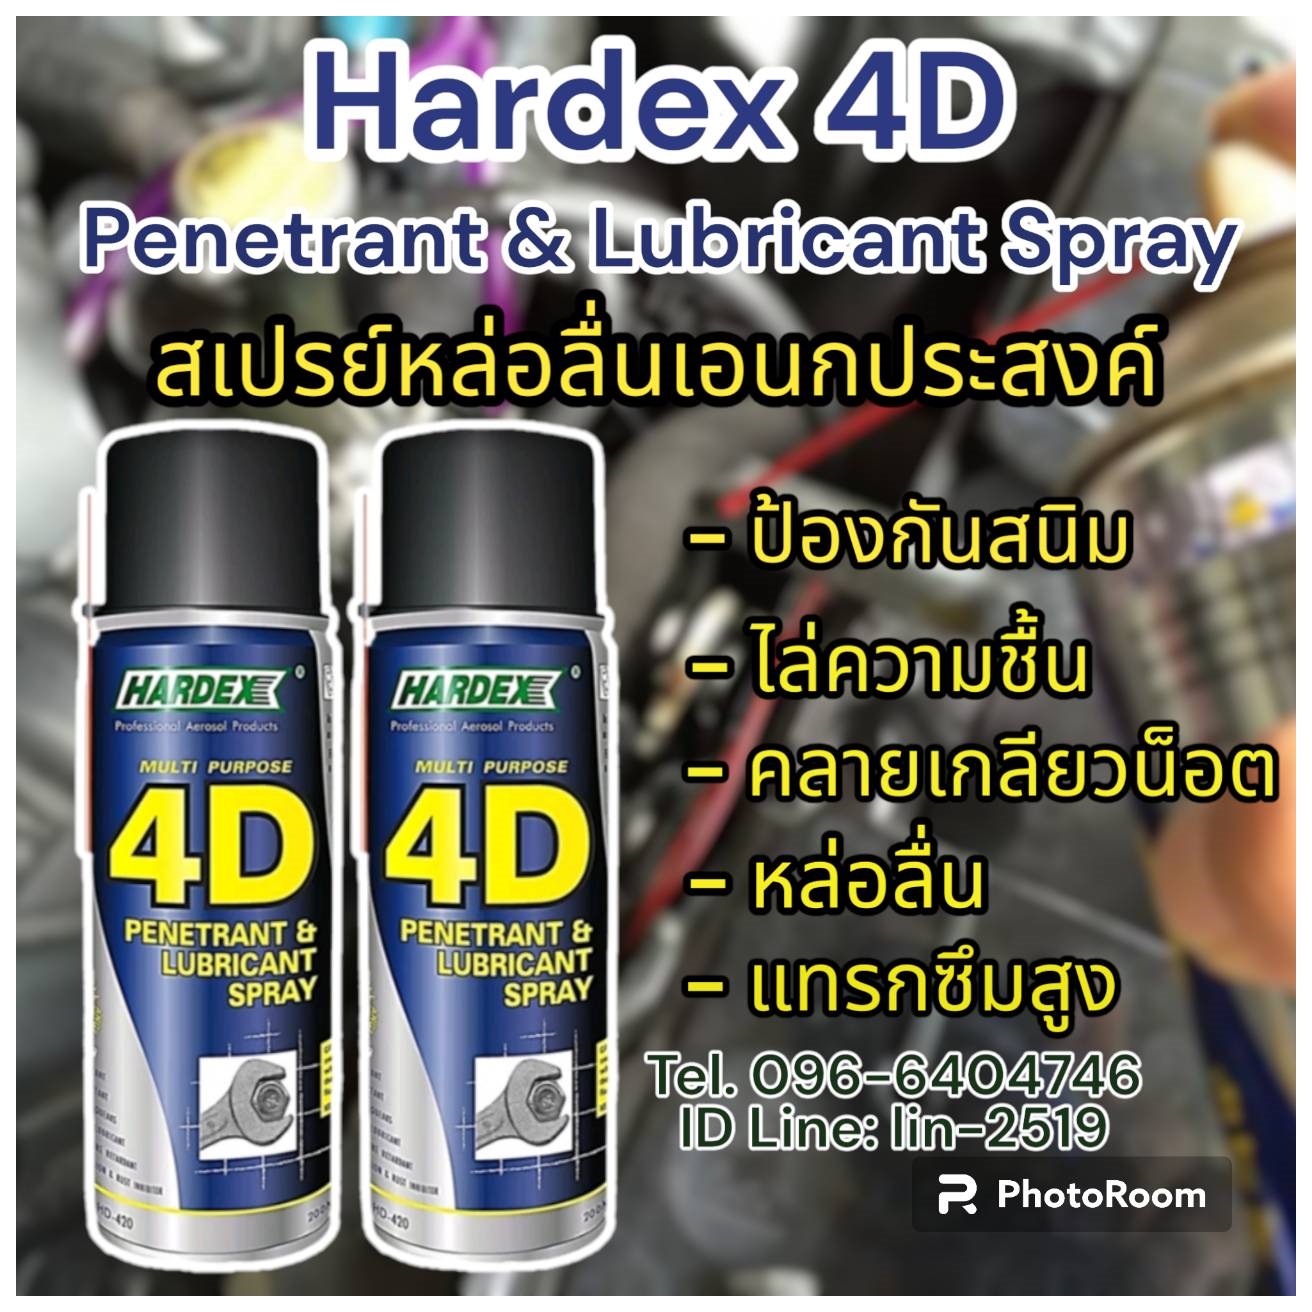 รูปภาพ Hardex 4D Penetrant &Lubricant Spray สเปรย์หล่อลื่นอเนกประสงค์คลายเกลียวน๊อตไล่ความชื้น ป้องกันความชื้น หล่อลื่นป้องกันสนิม แทรกซึมได้รวดเร็วเพื่อละลายสนิมในน๊อตและเกลียว